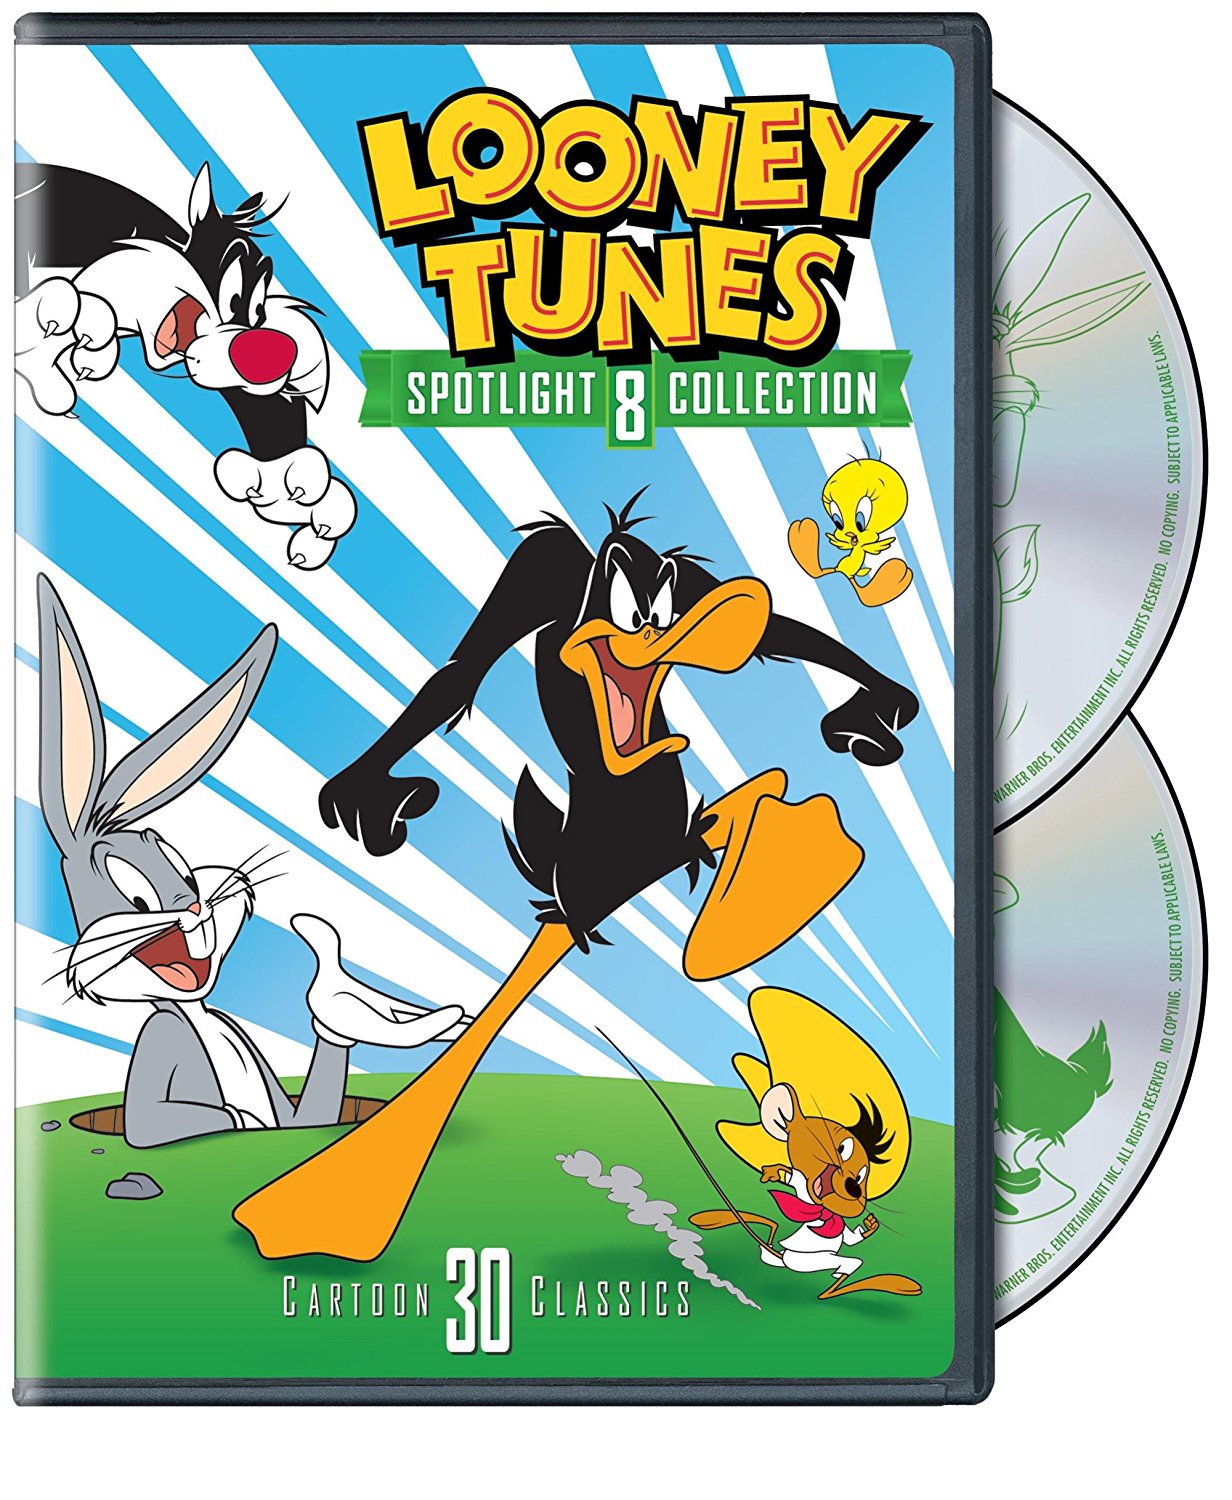 Looney Tunes Spotlight V8 skew.jpg